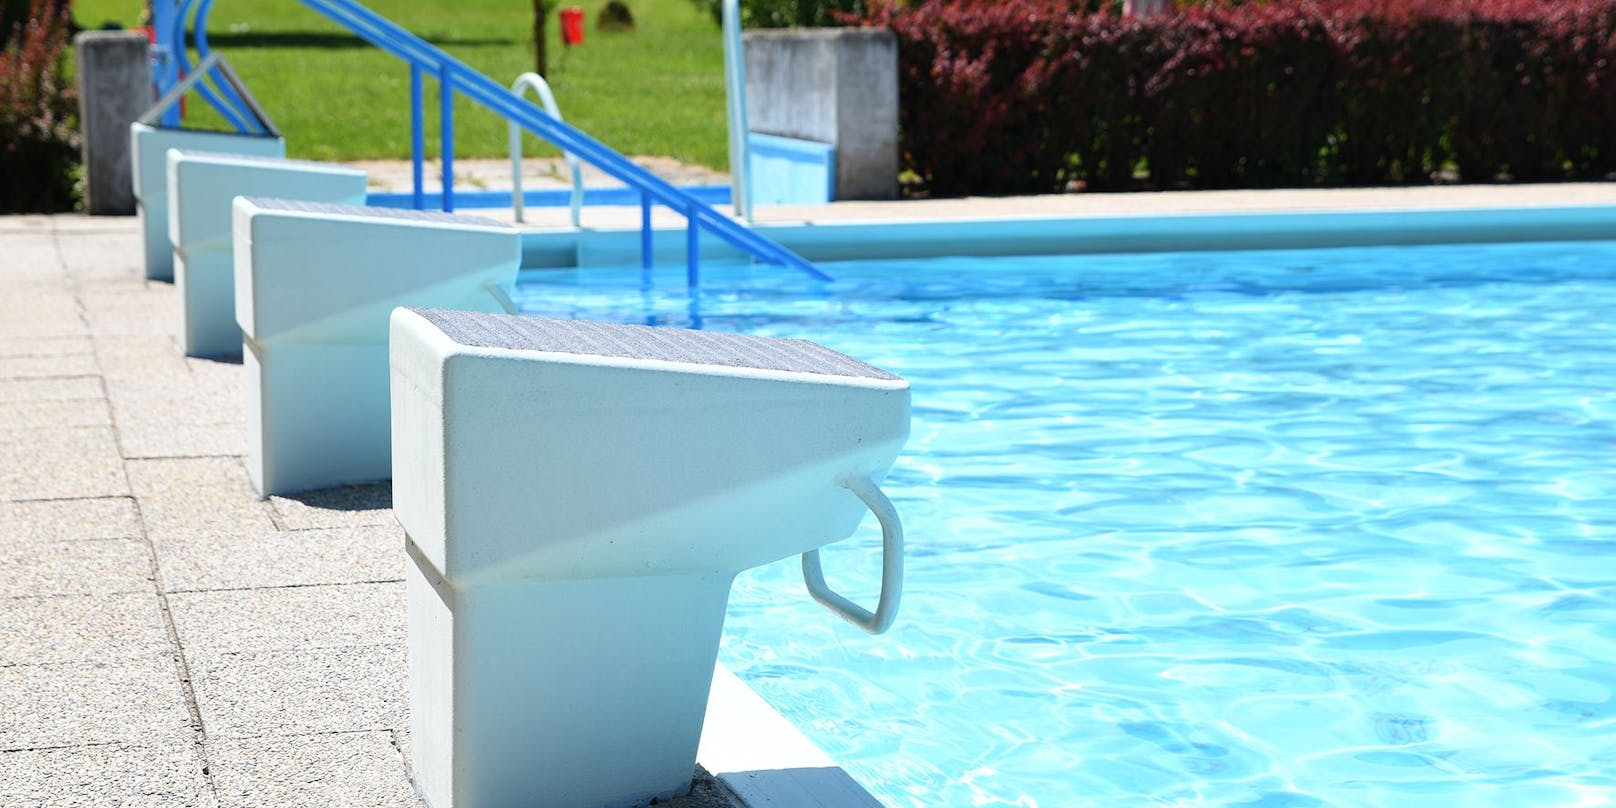 Einige Schwimmbäder erhalten nun Beschränkungen beim Befüllen - es ist zu trocken, Wasser zu knapp.